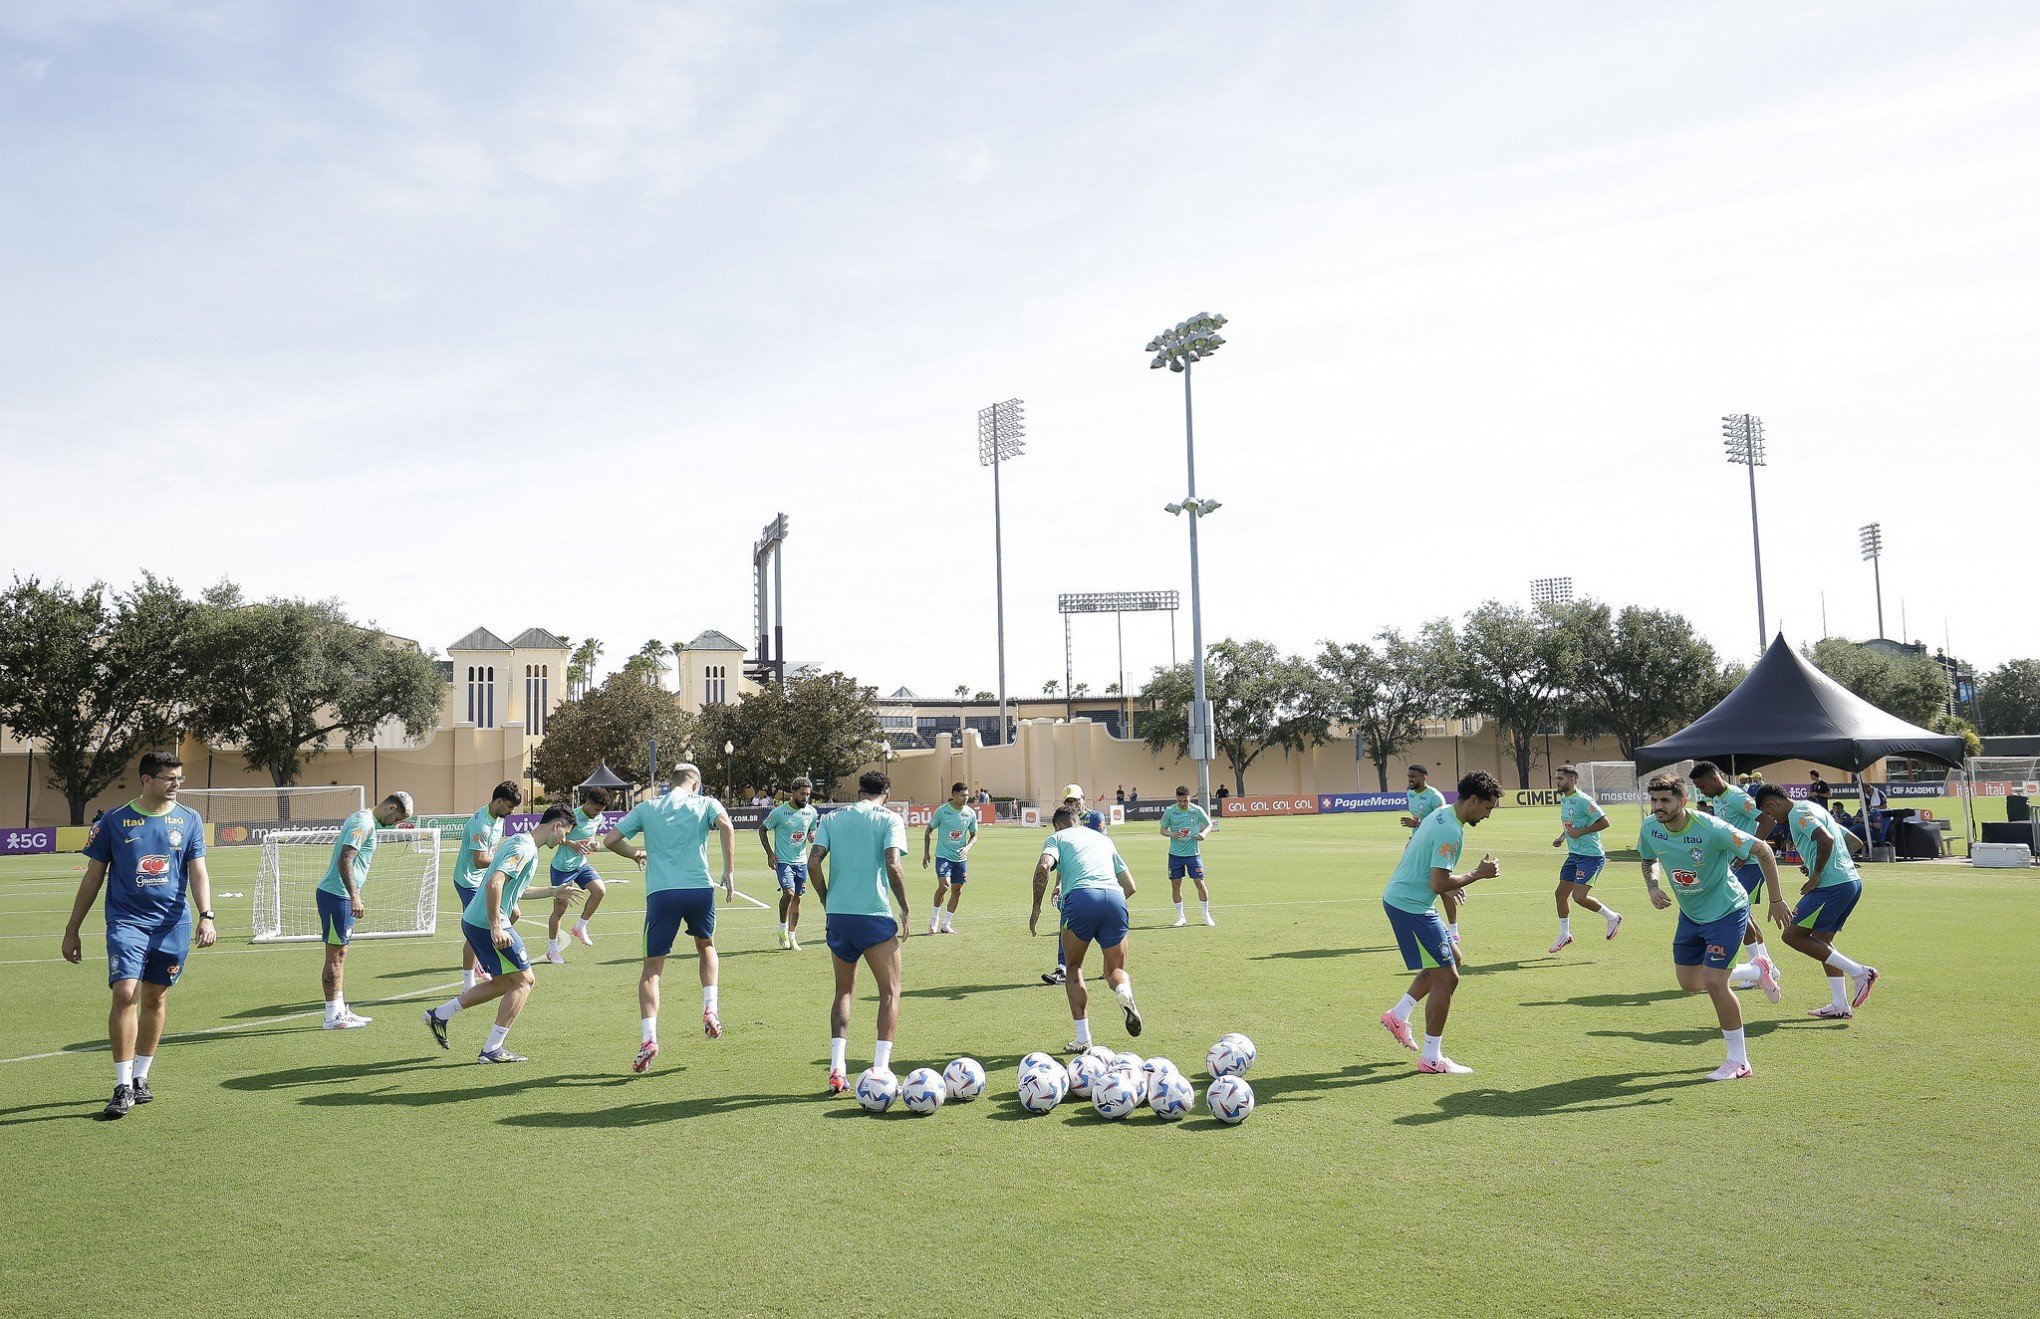 Seleção brasileira treina em Orlando, onde enfrenta os EUA na quarta